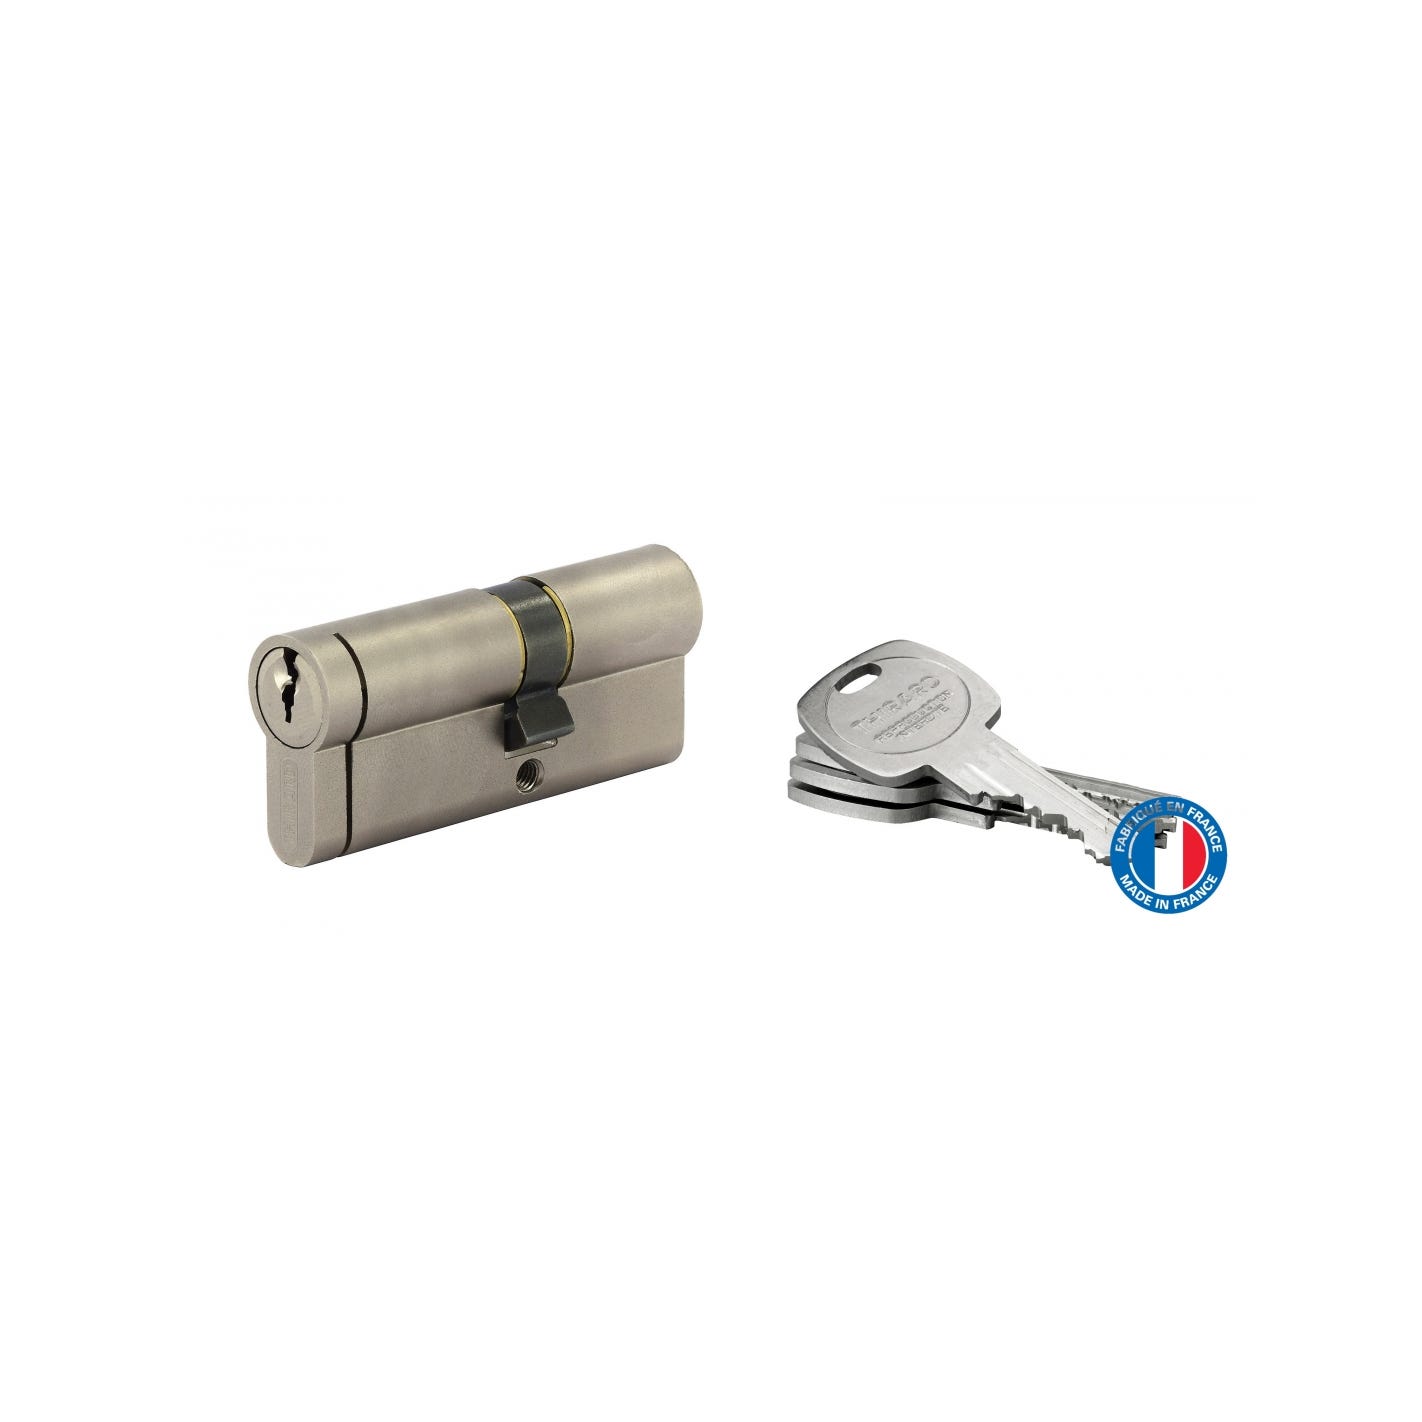 THIRARD - Cylindre de serrure double entrée HG5+, 30x40mm, nickel, anti-arrachement, anti-perçage, anti-casse, 5 clés 3